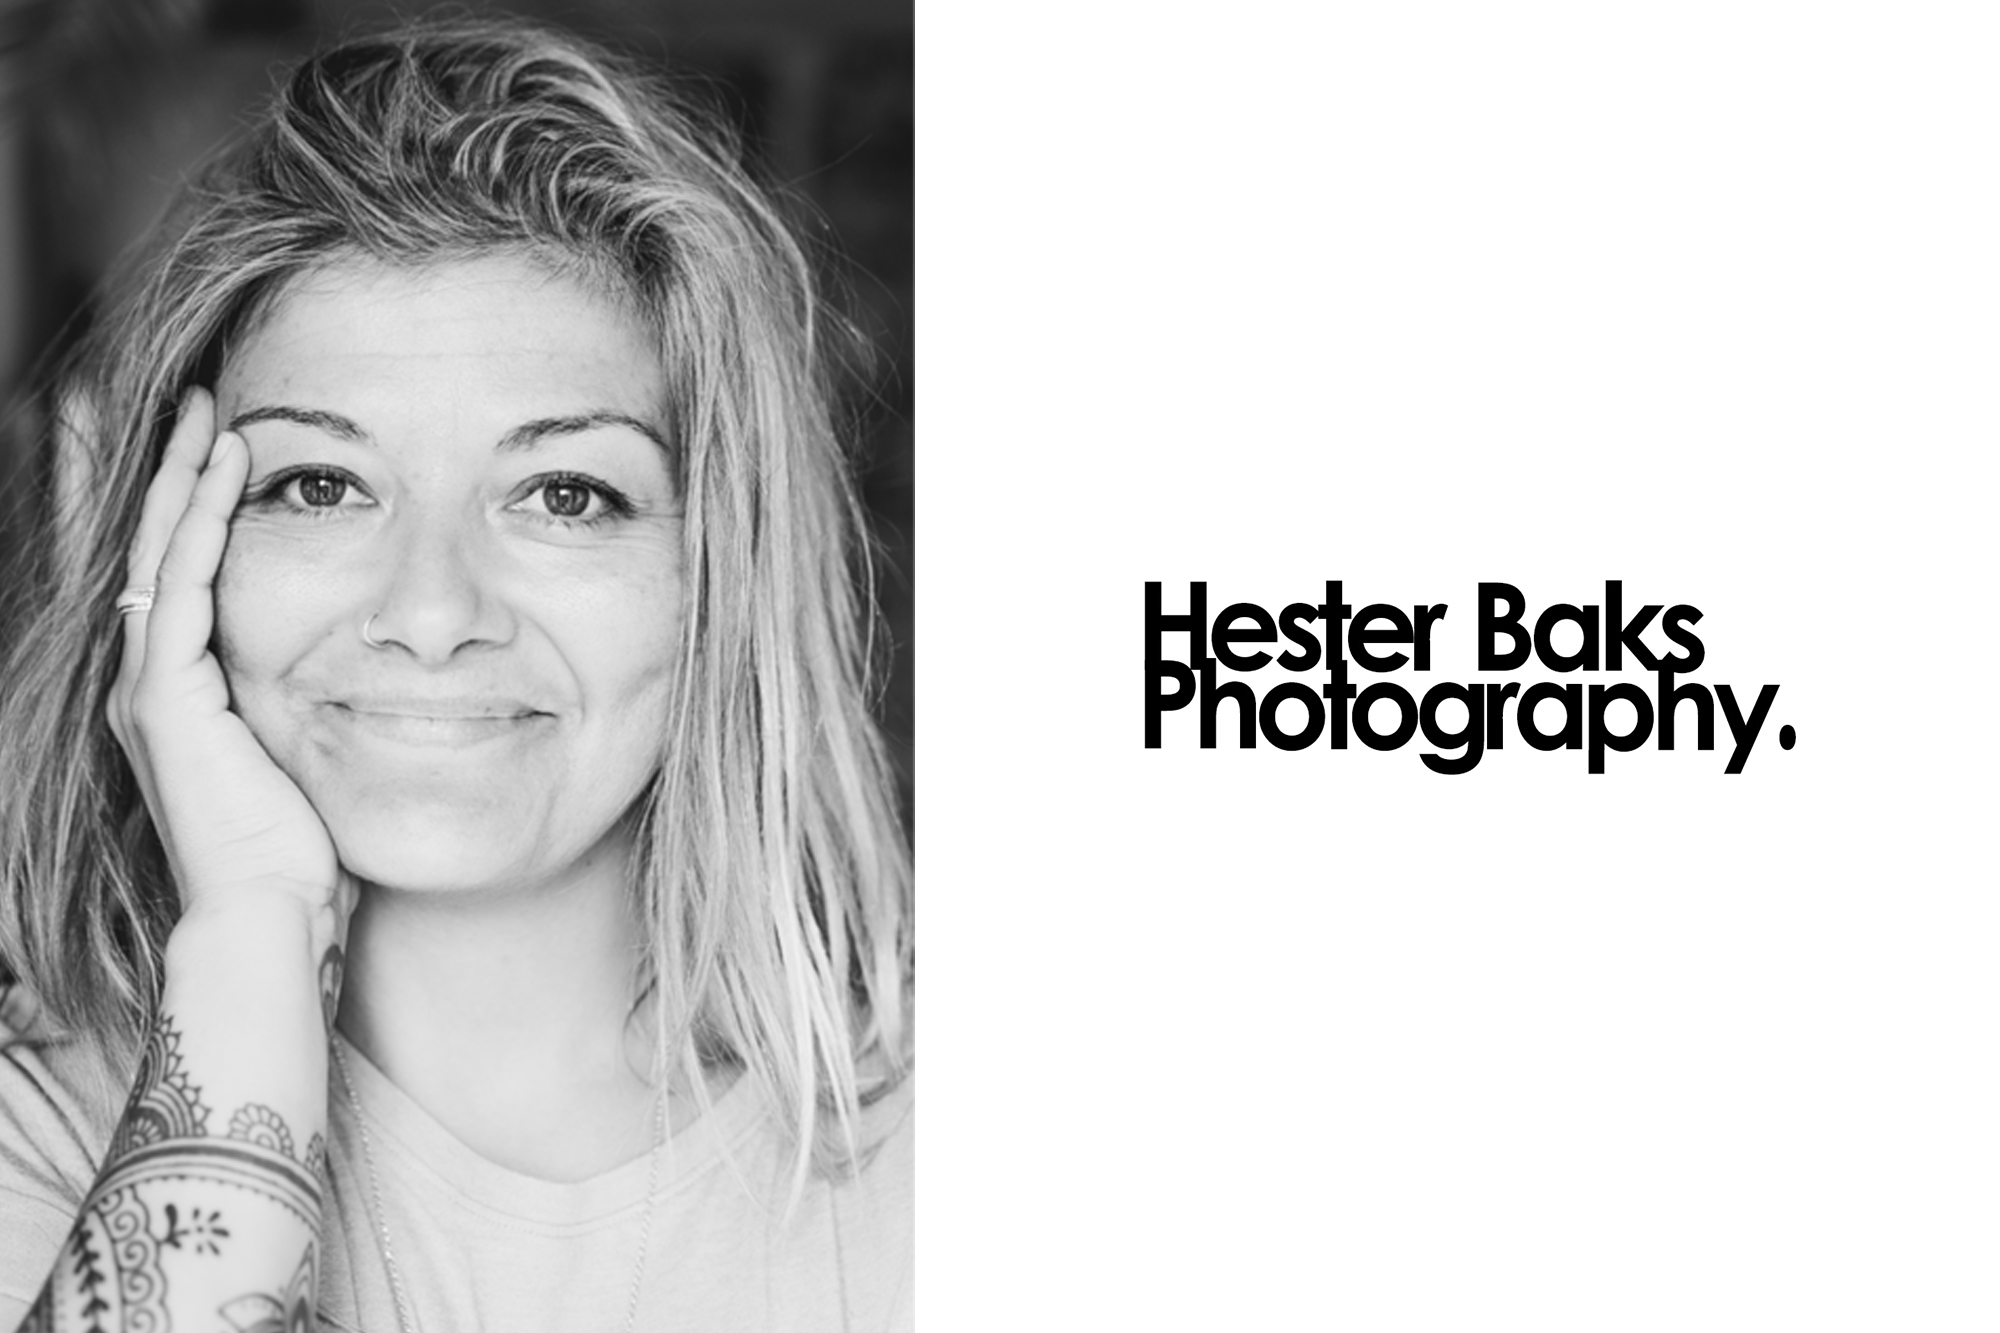 Profiles: Hester Baks – ”Om nu niet te fotograferen voelt onmogelijk.”